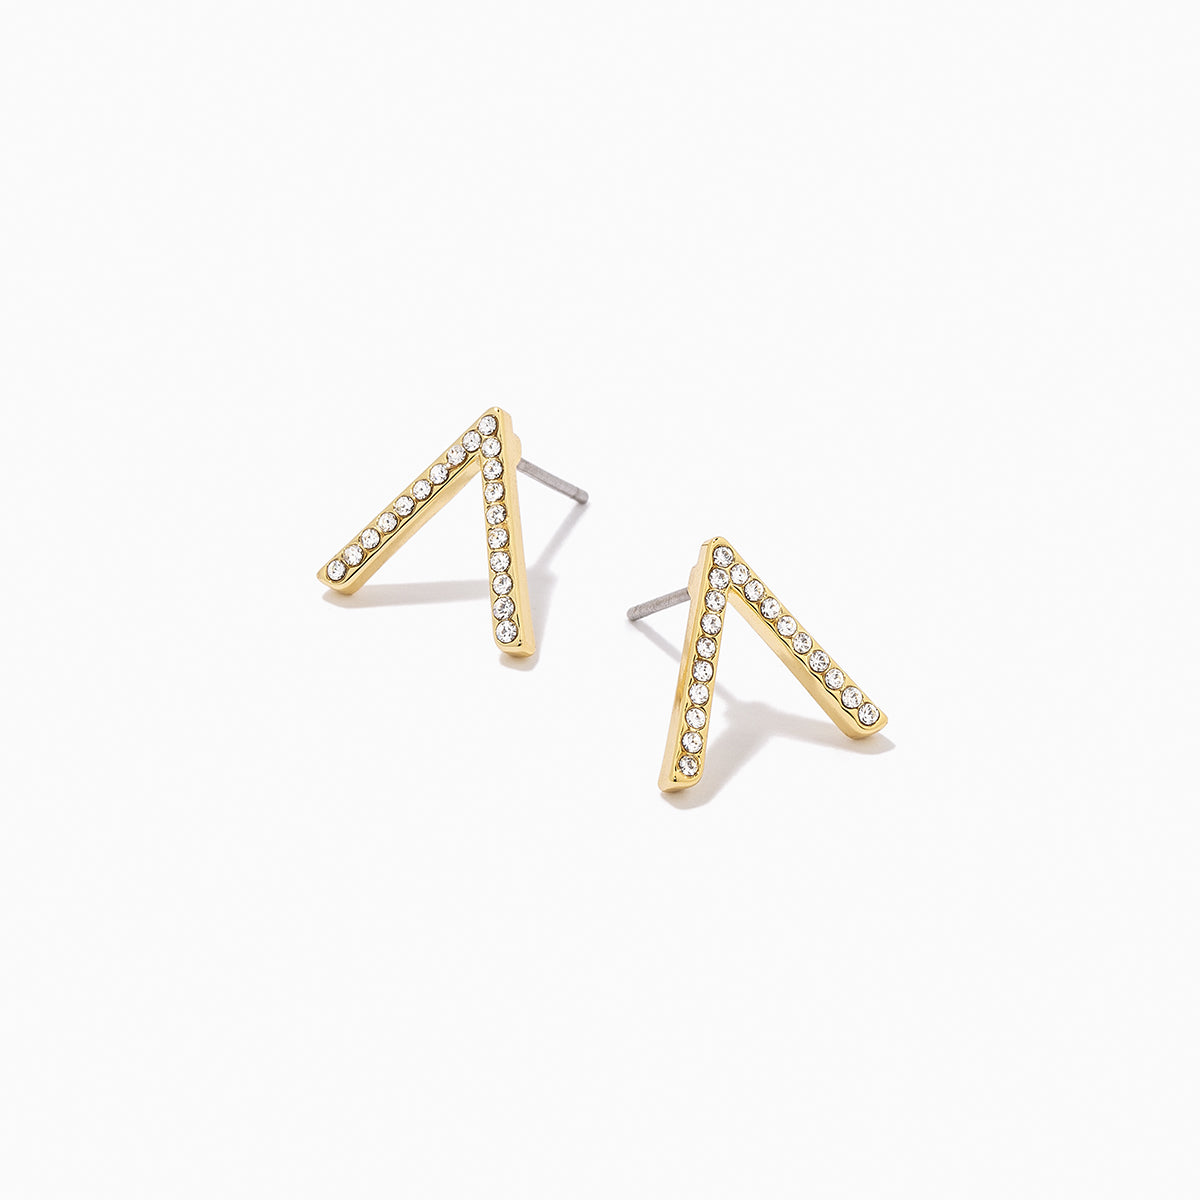 Little Stud Earrings in Gold, Pavé + V Shaped Earrings